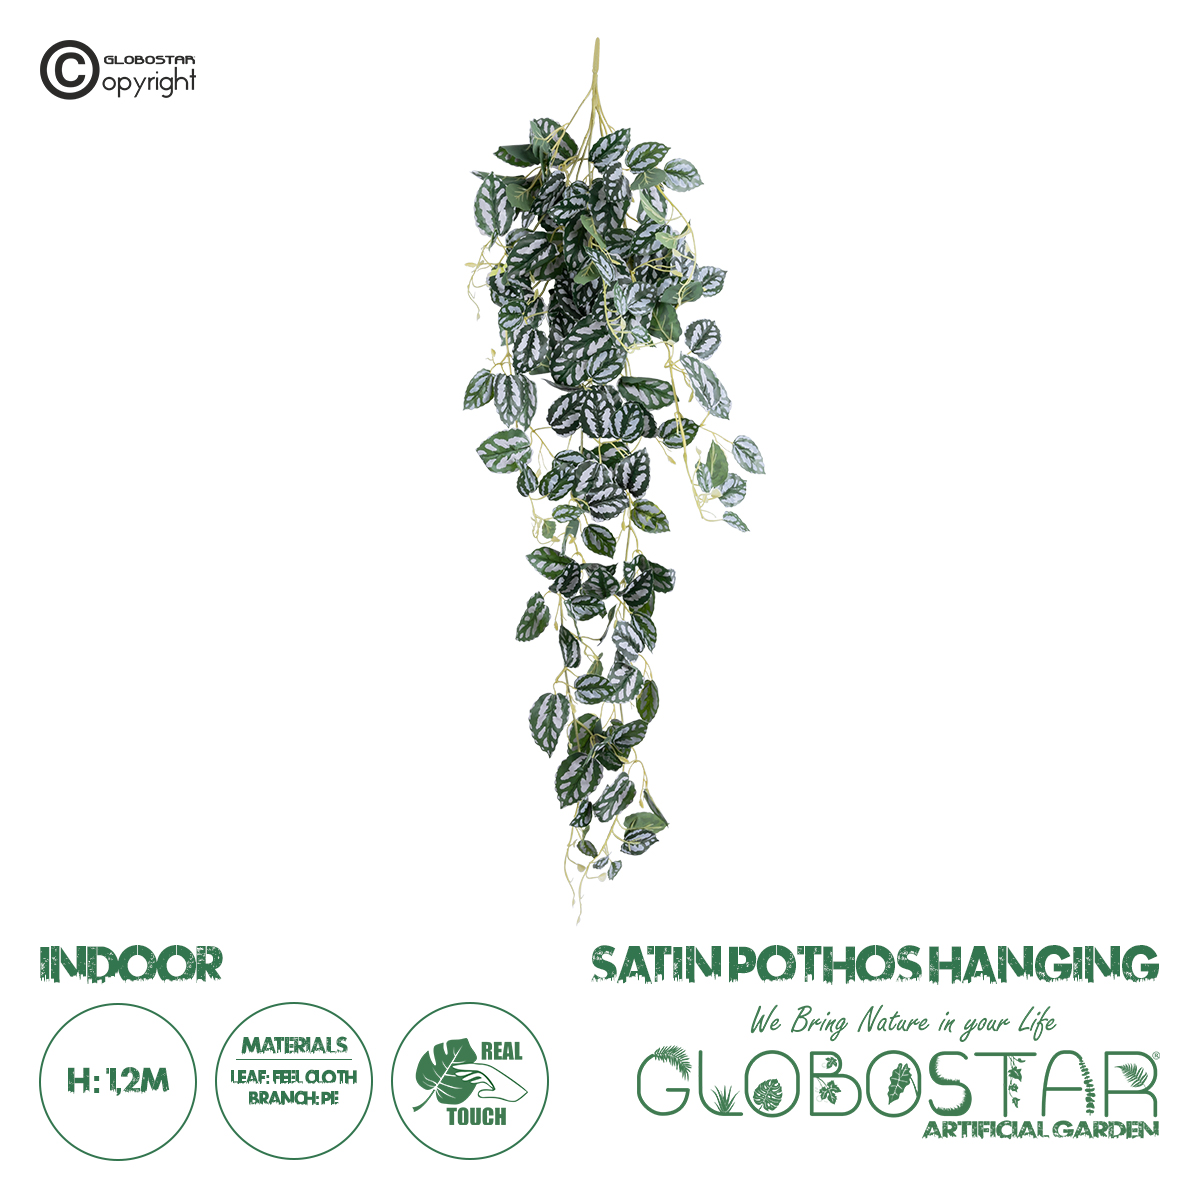 GloboStar® Artificial Garden SATIN POTHOS HANGING 20242 Τεχνητό Διακοσμητικό Κρεμαστό Φυτό Ασημένια Άμπελός – Πόθος Υ120cm